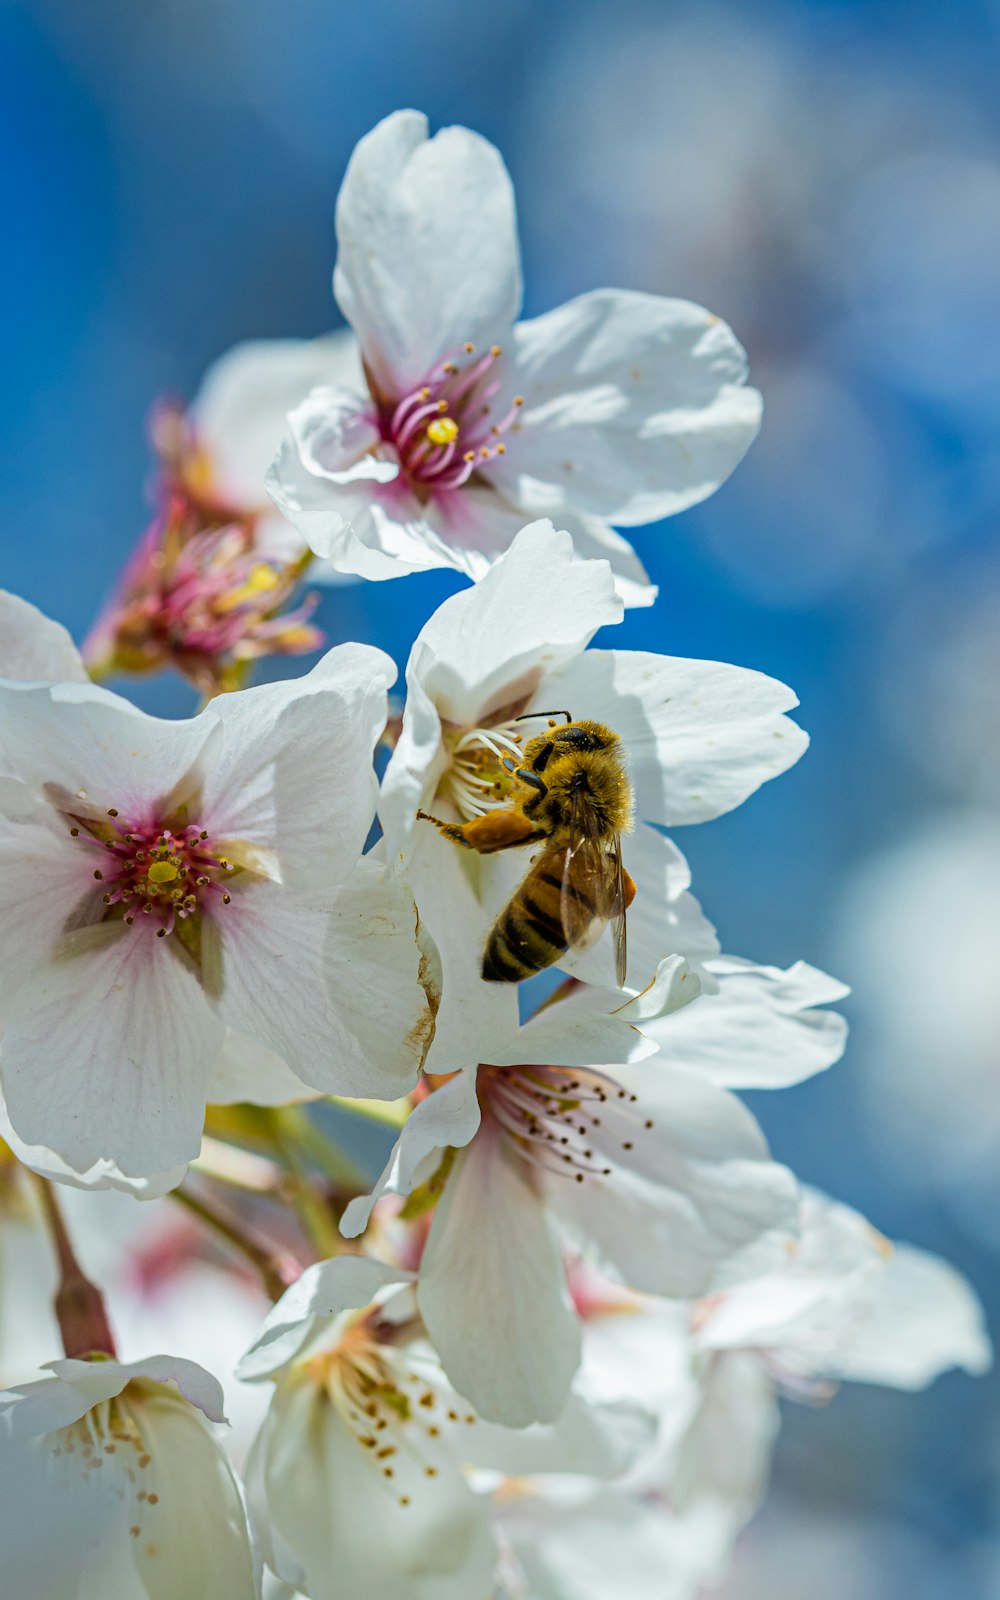 abelha empoleirada na flor de cerejeira branca em fotografia de perto durante o dia